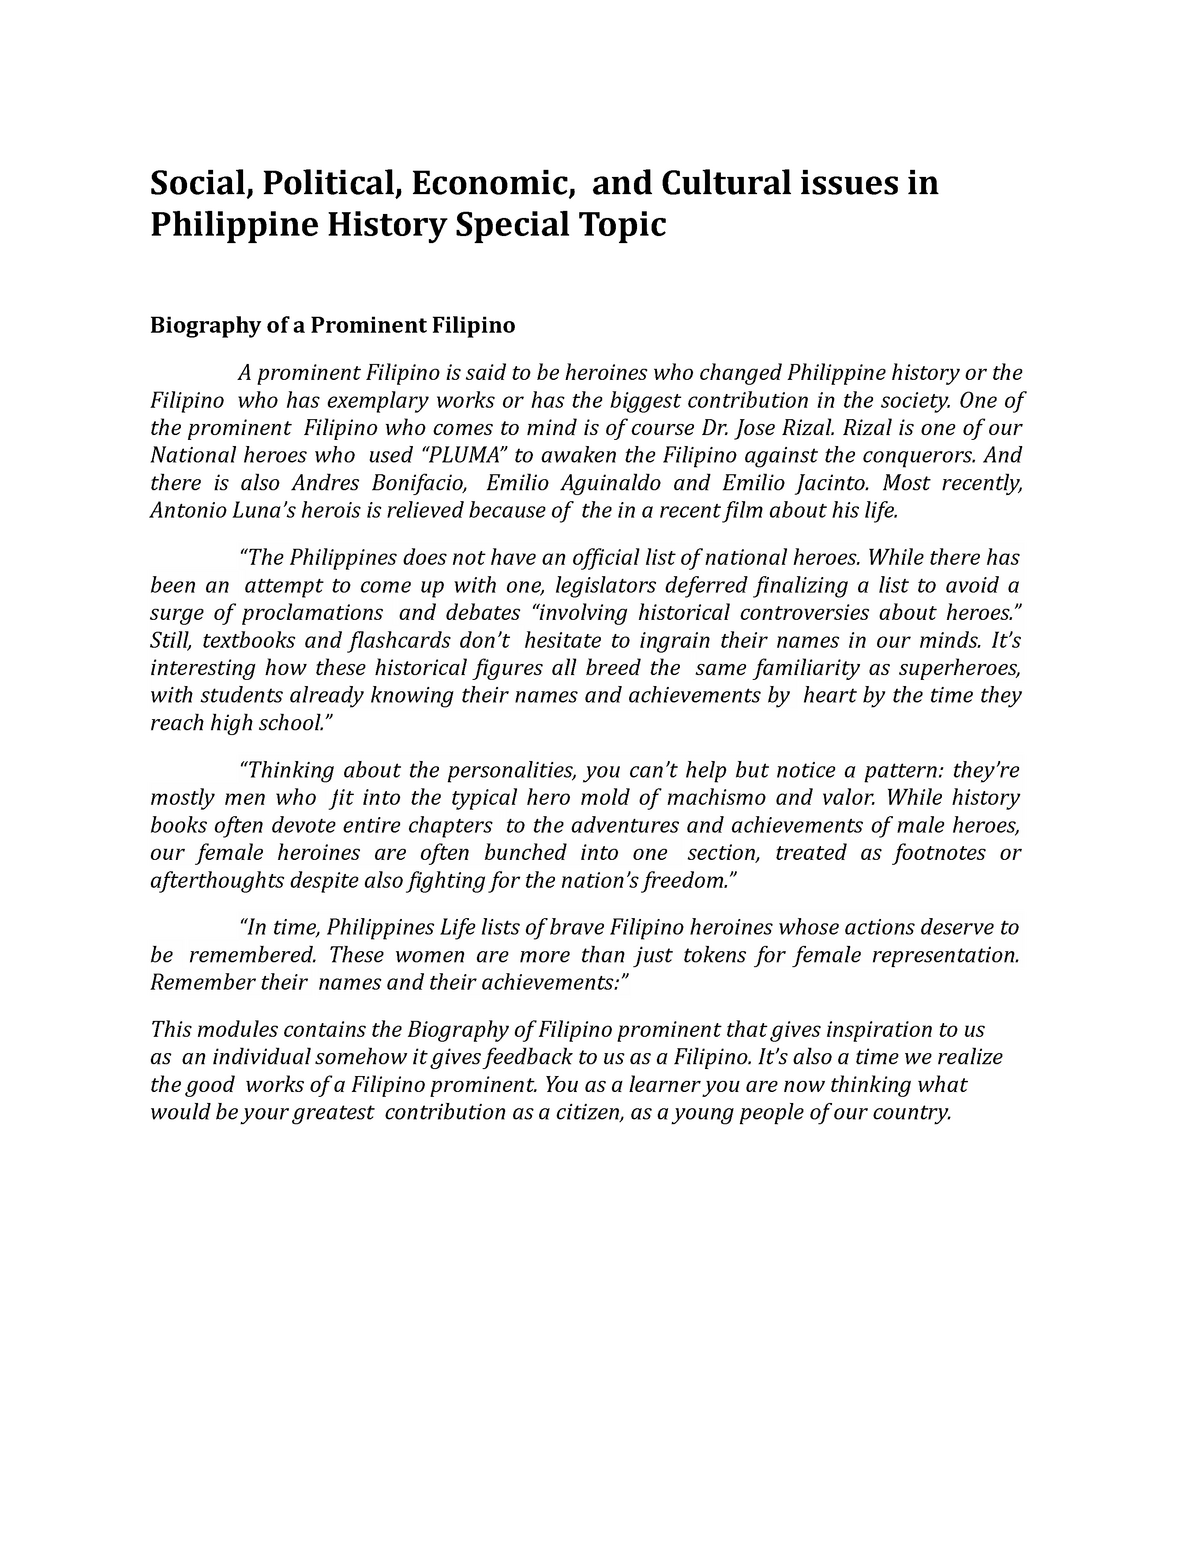 short biography example tagalog